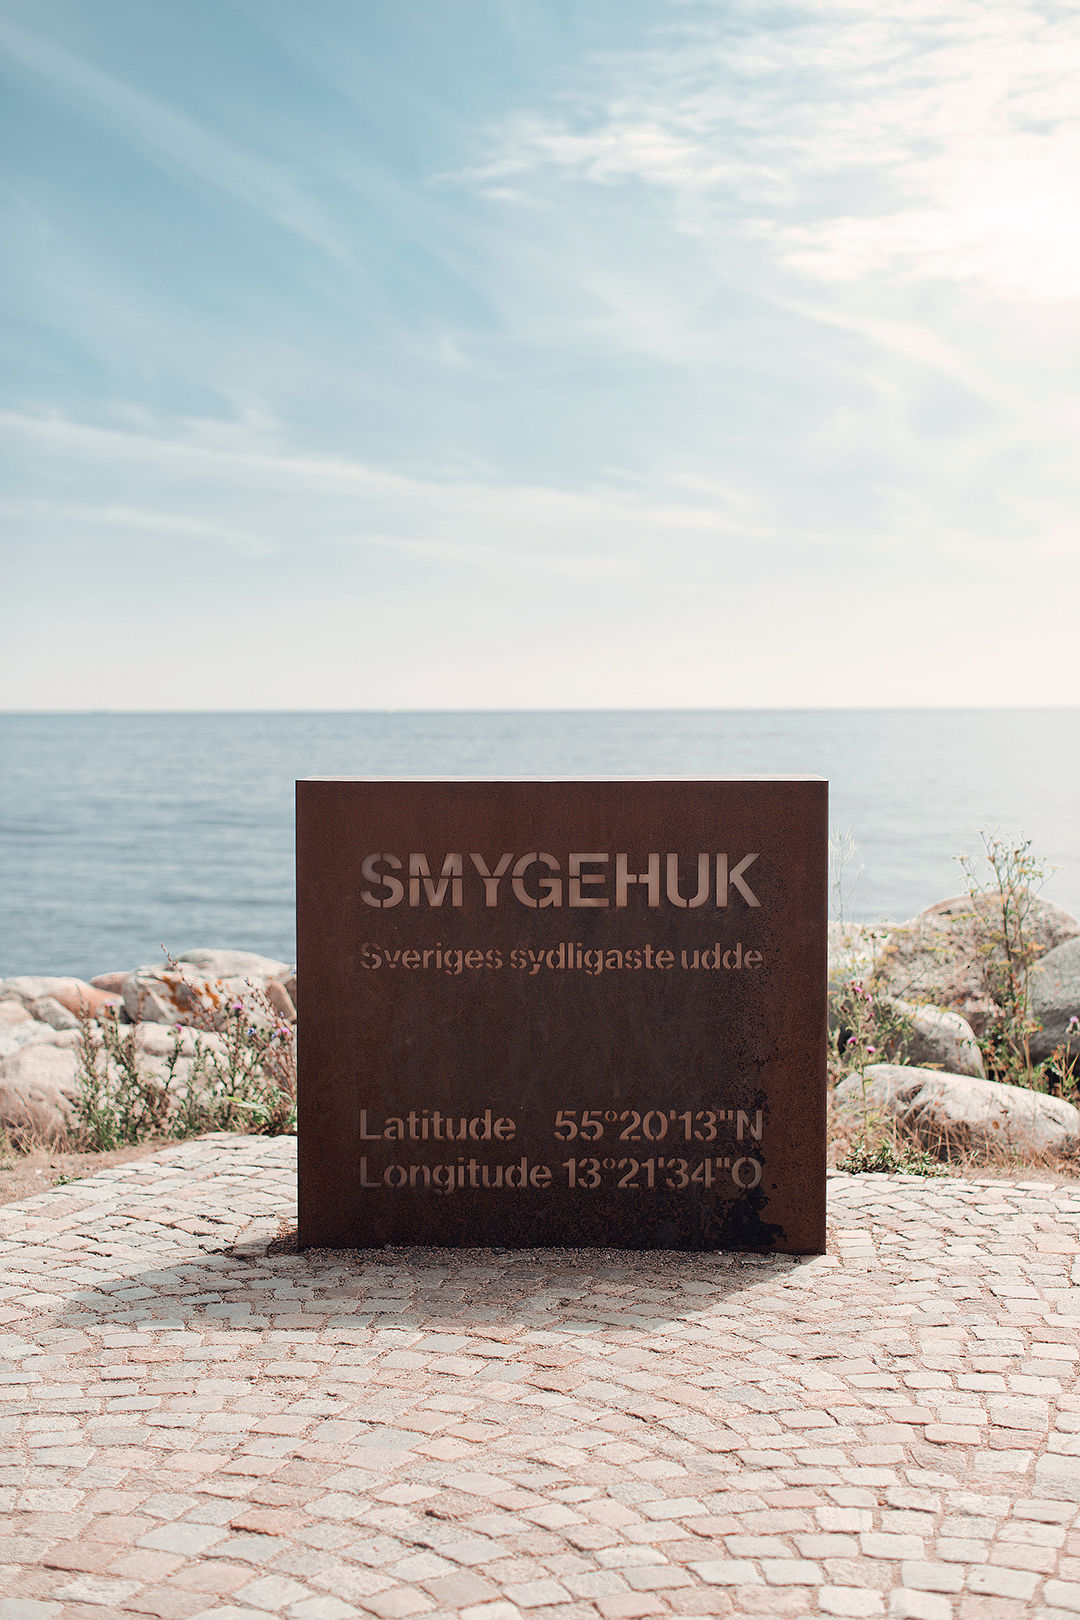 Smygehuk - Sveriges sydligaste udde​